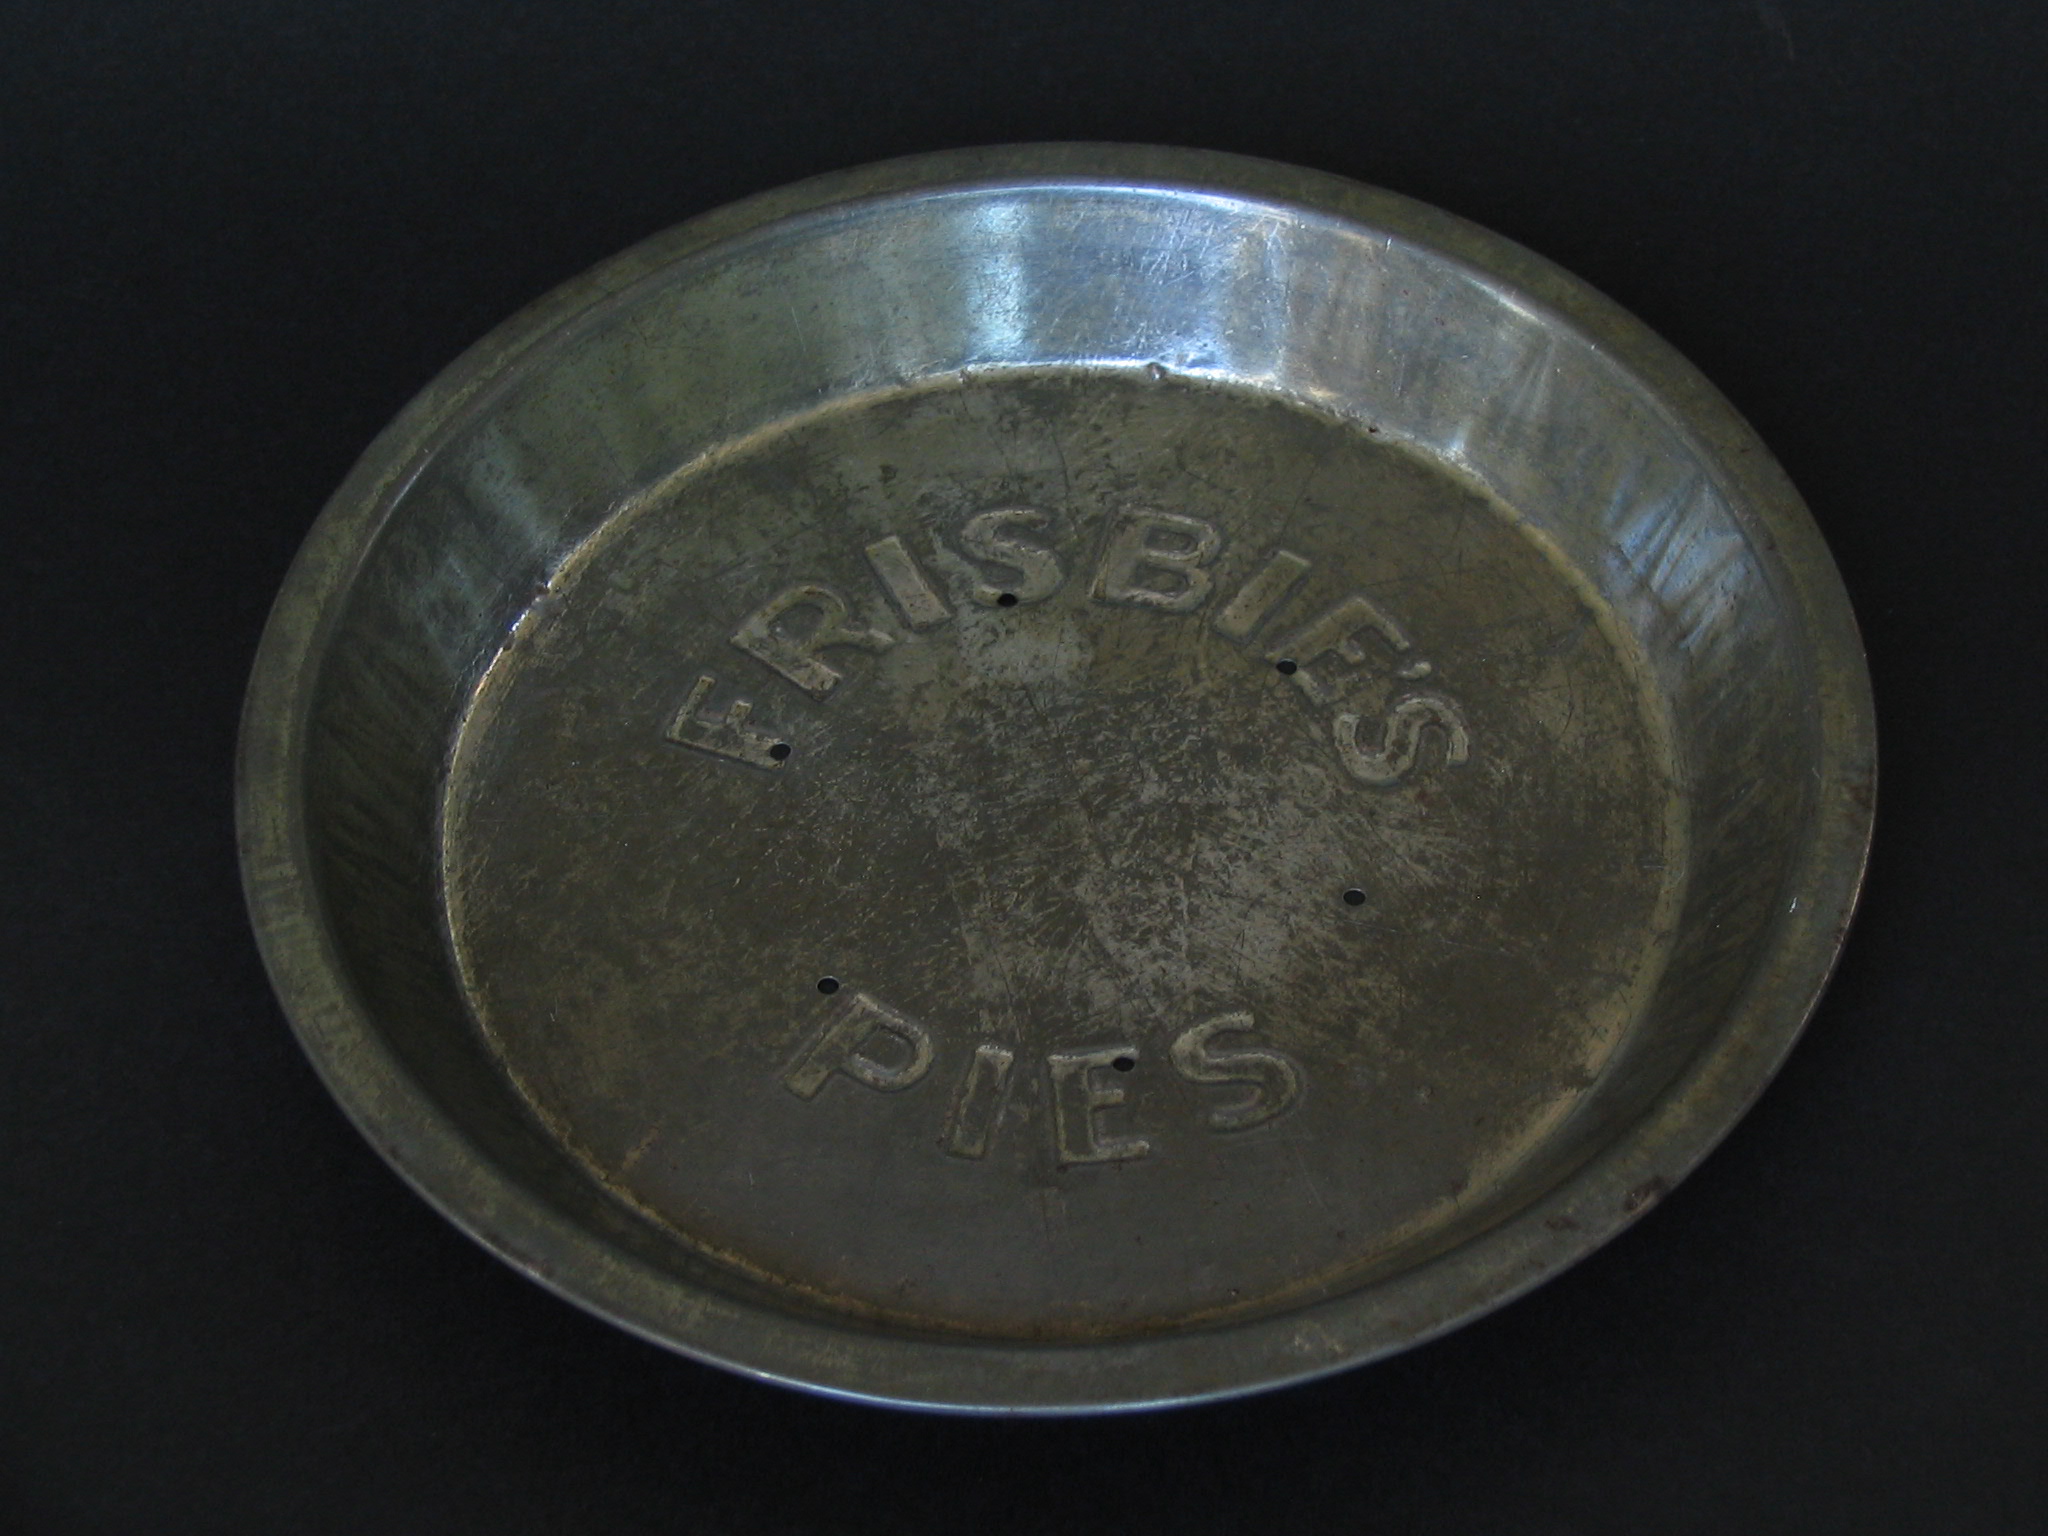 Frisbie’s Pies Tin (1871-1958) Frisbie Pie Company